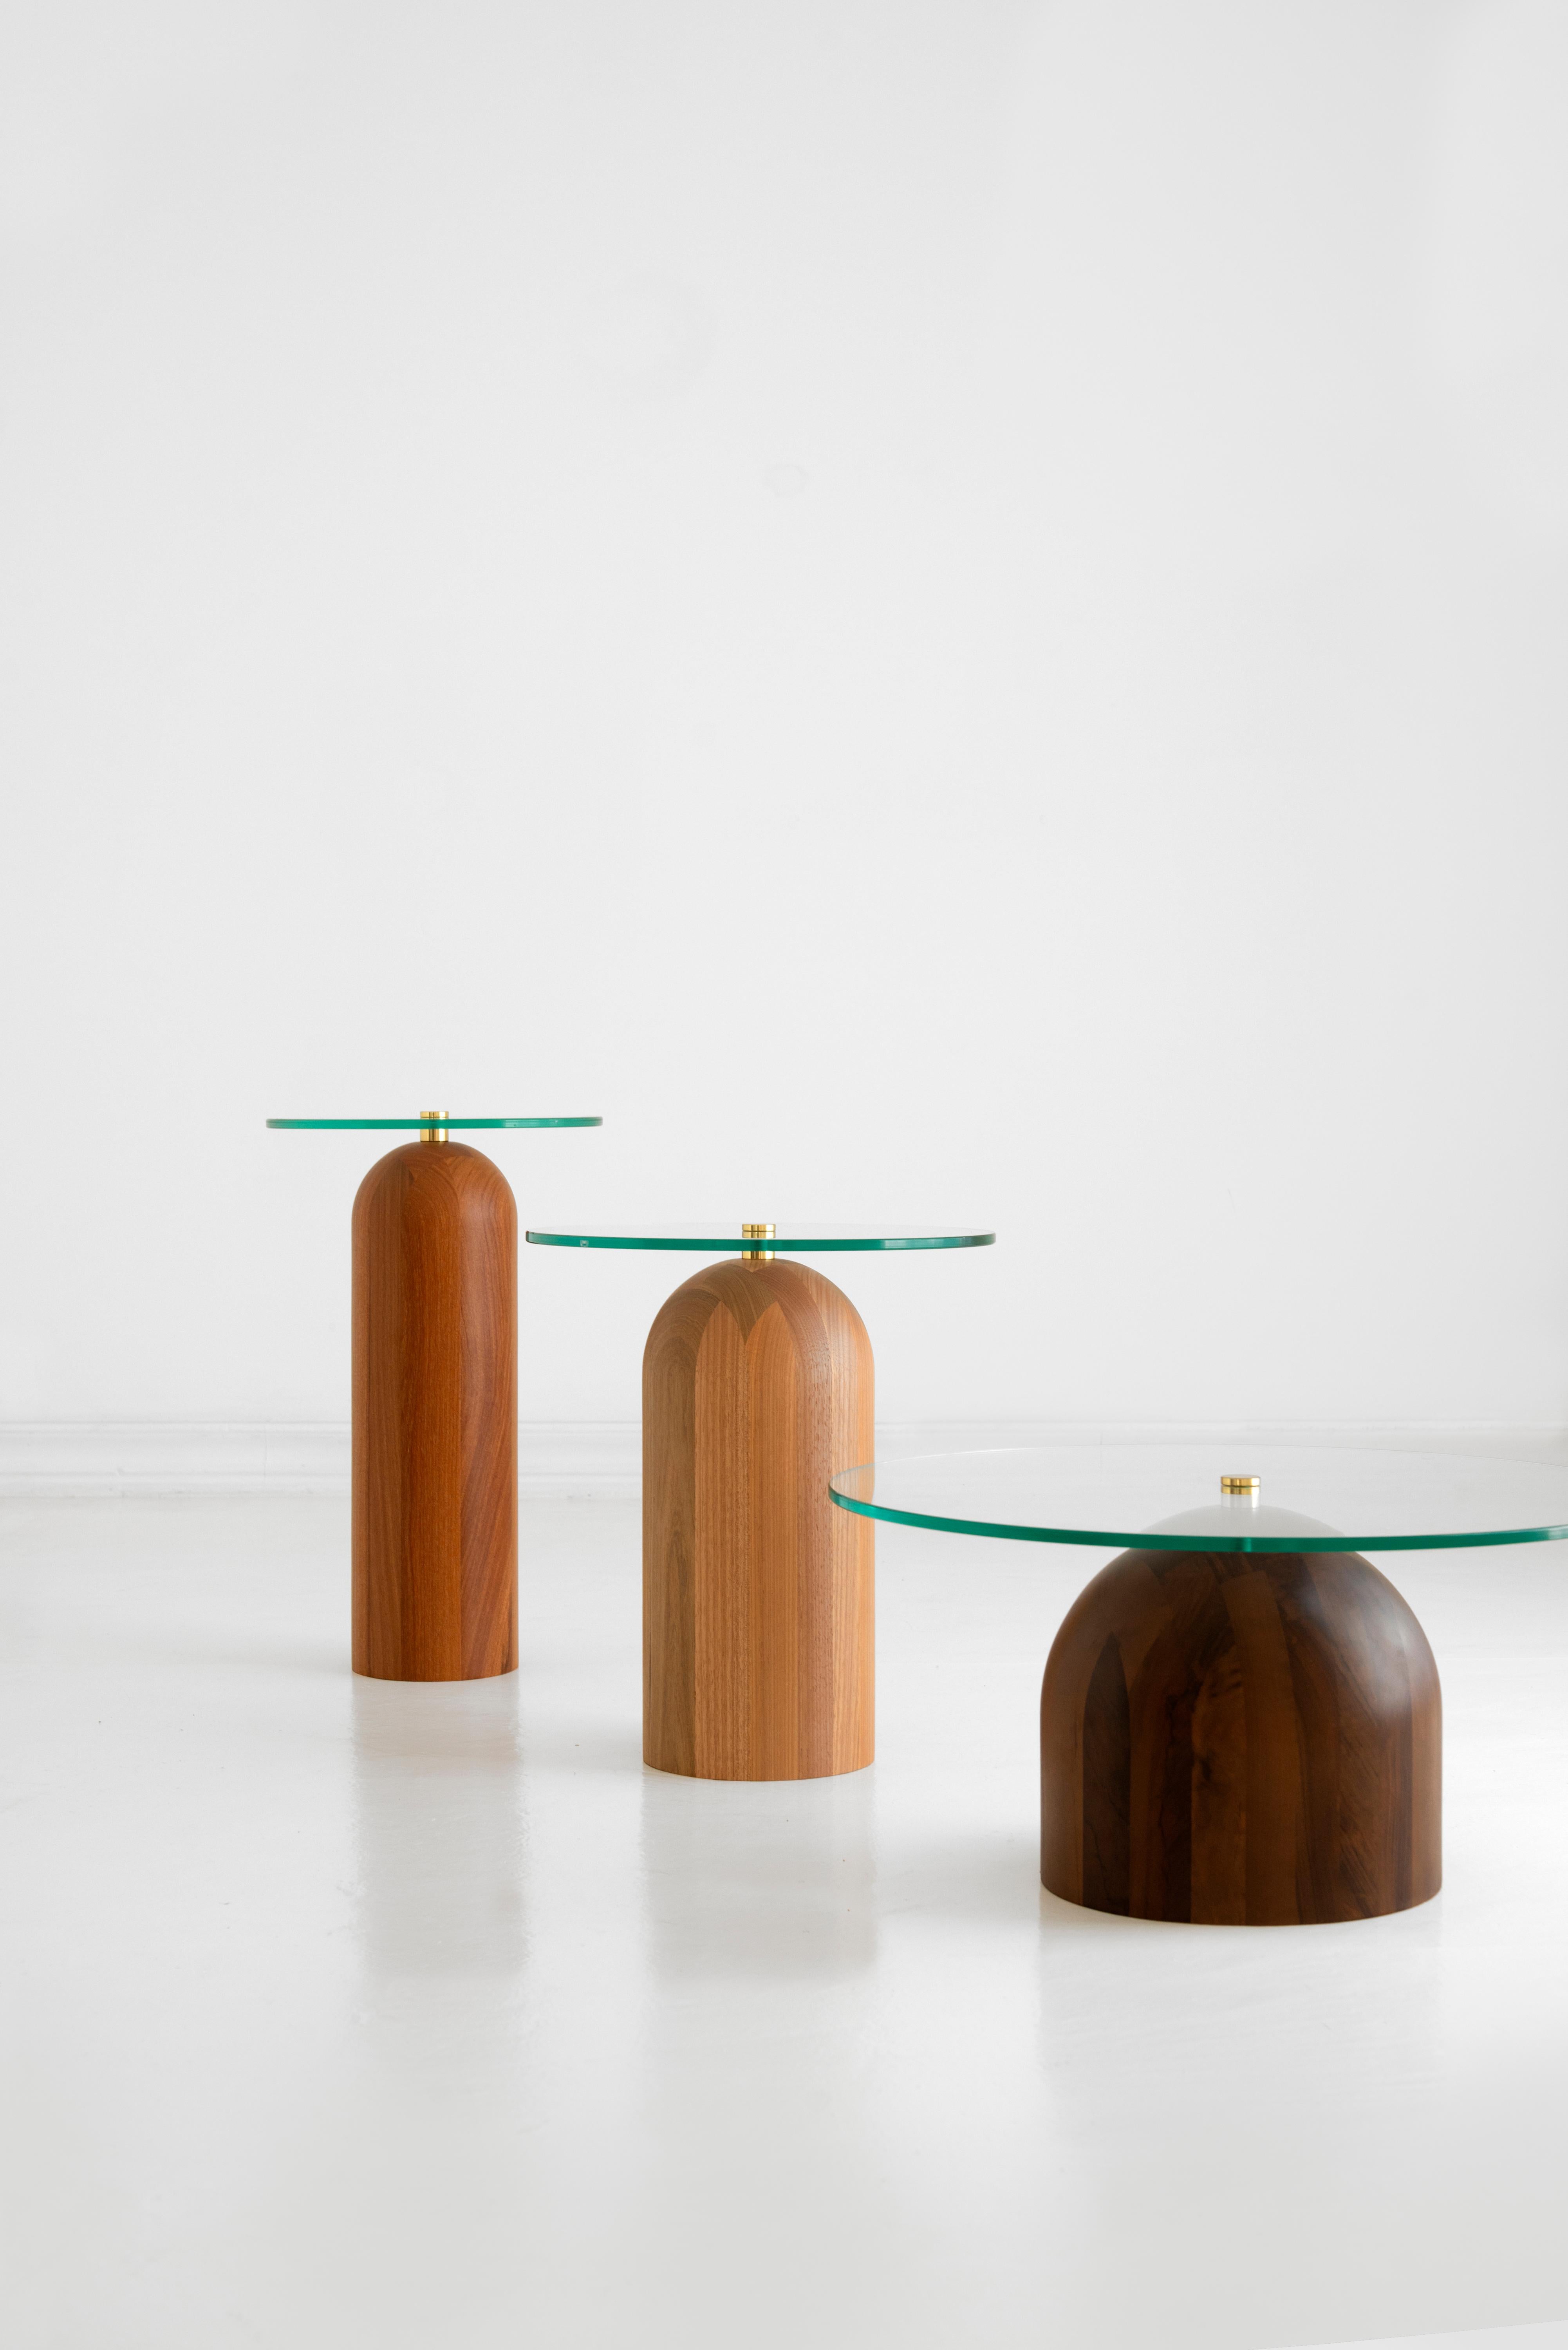 Brazilian Trio of Side Tables, Leandro Garcia, Contemporary Brazil Design